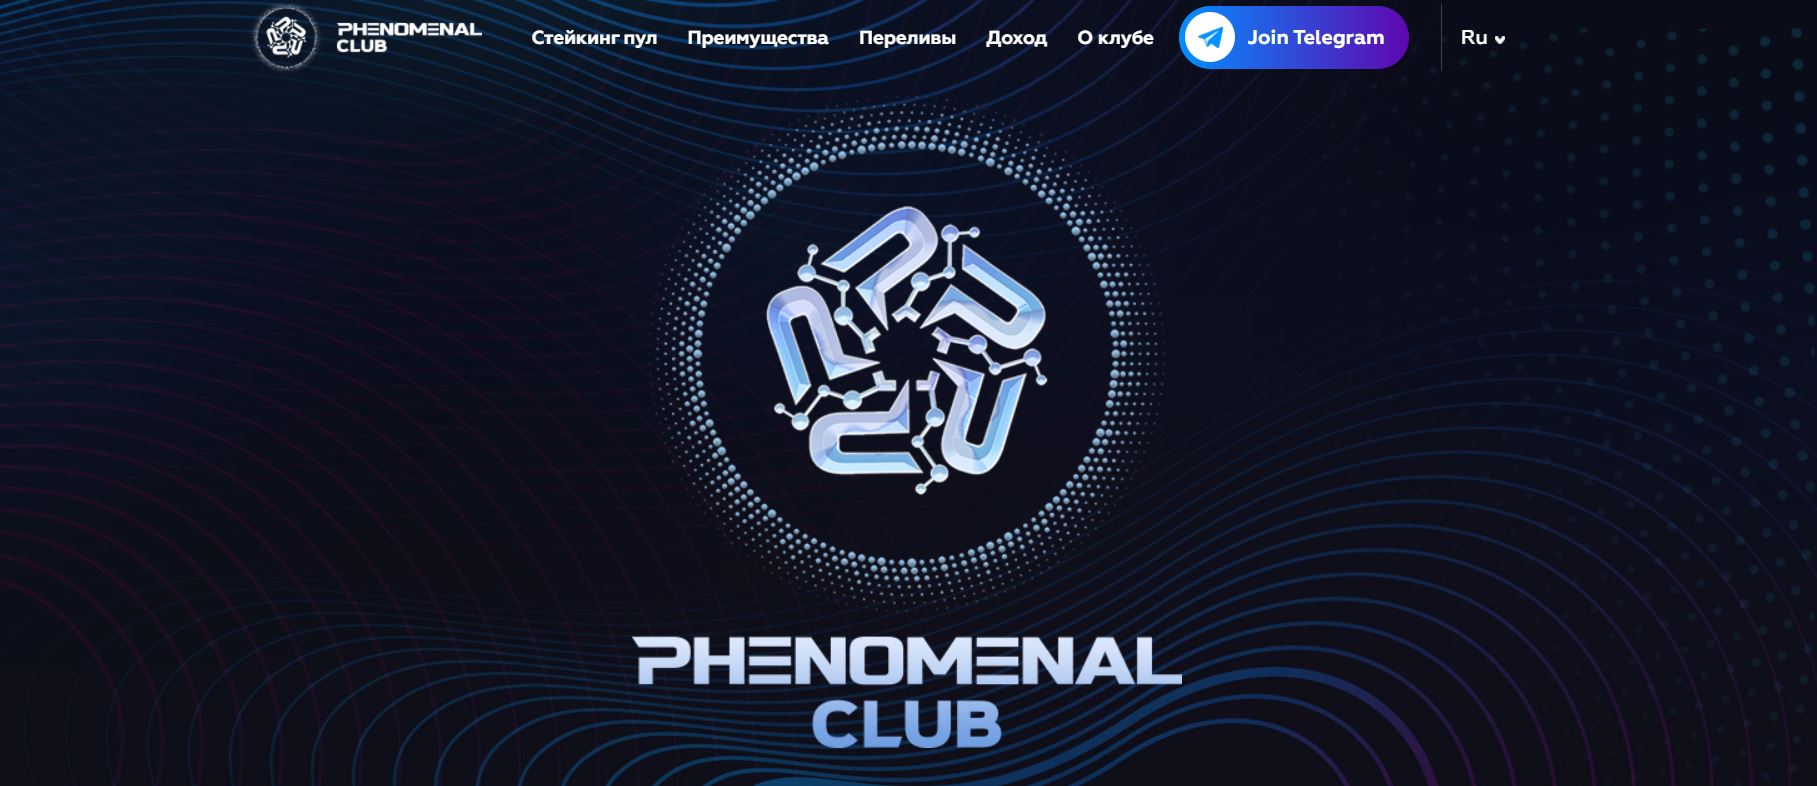 Phenomenal Club